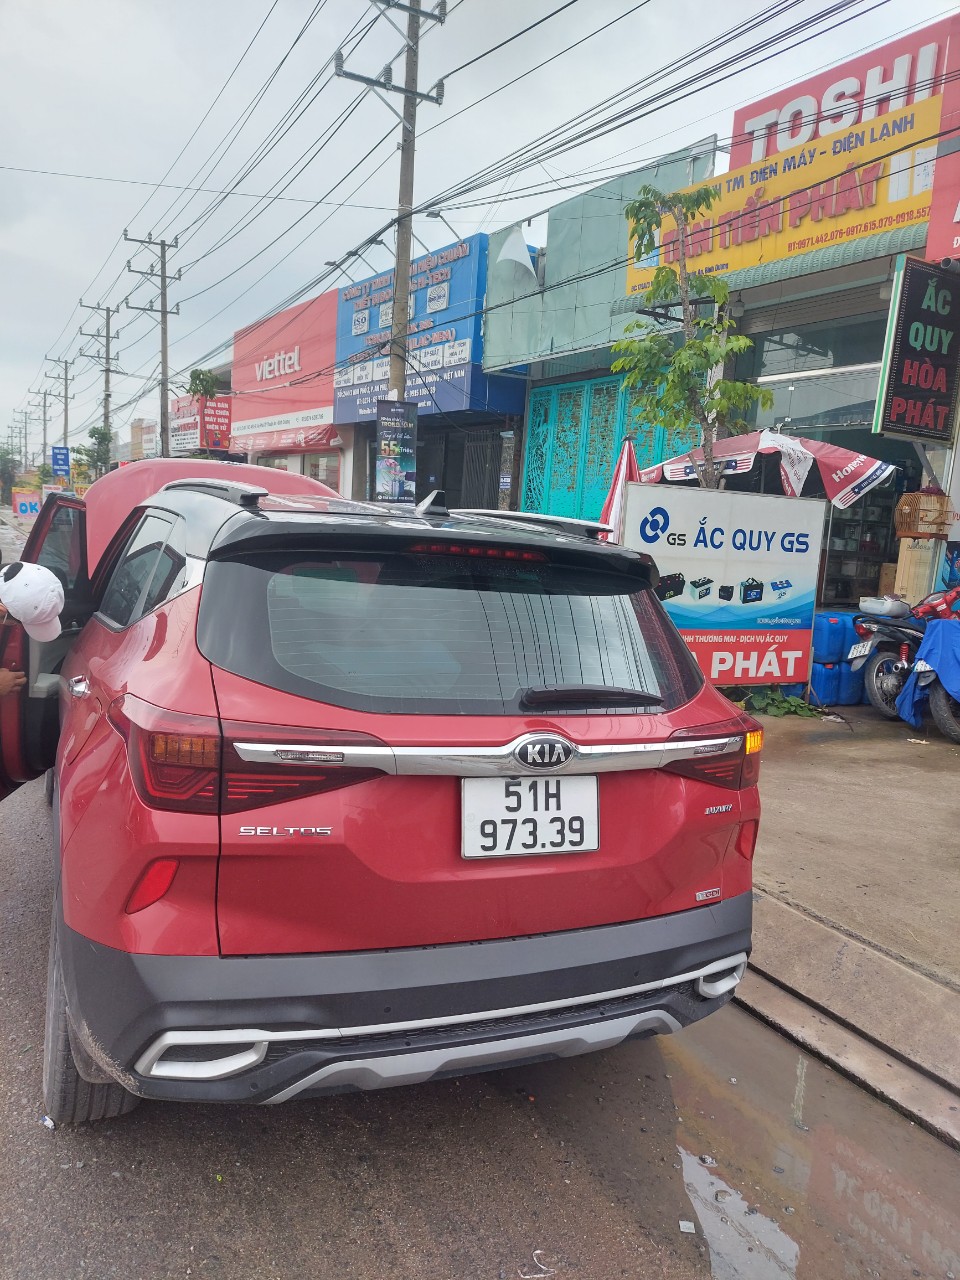 Thay bình ắc quy xe Kia Seltos tại cửa hàng Thuận An 